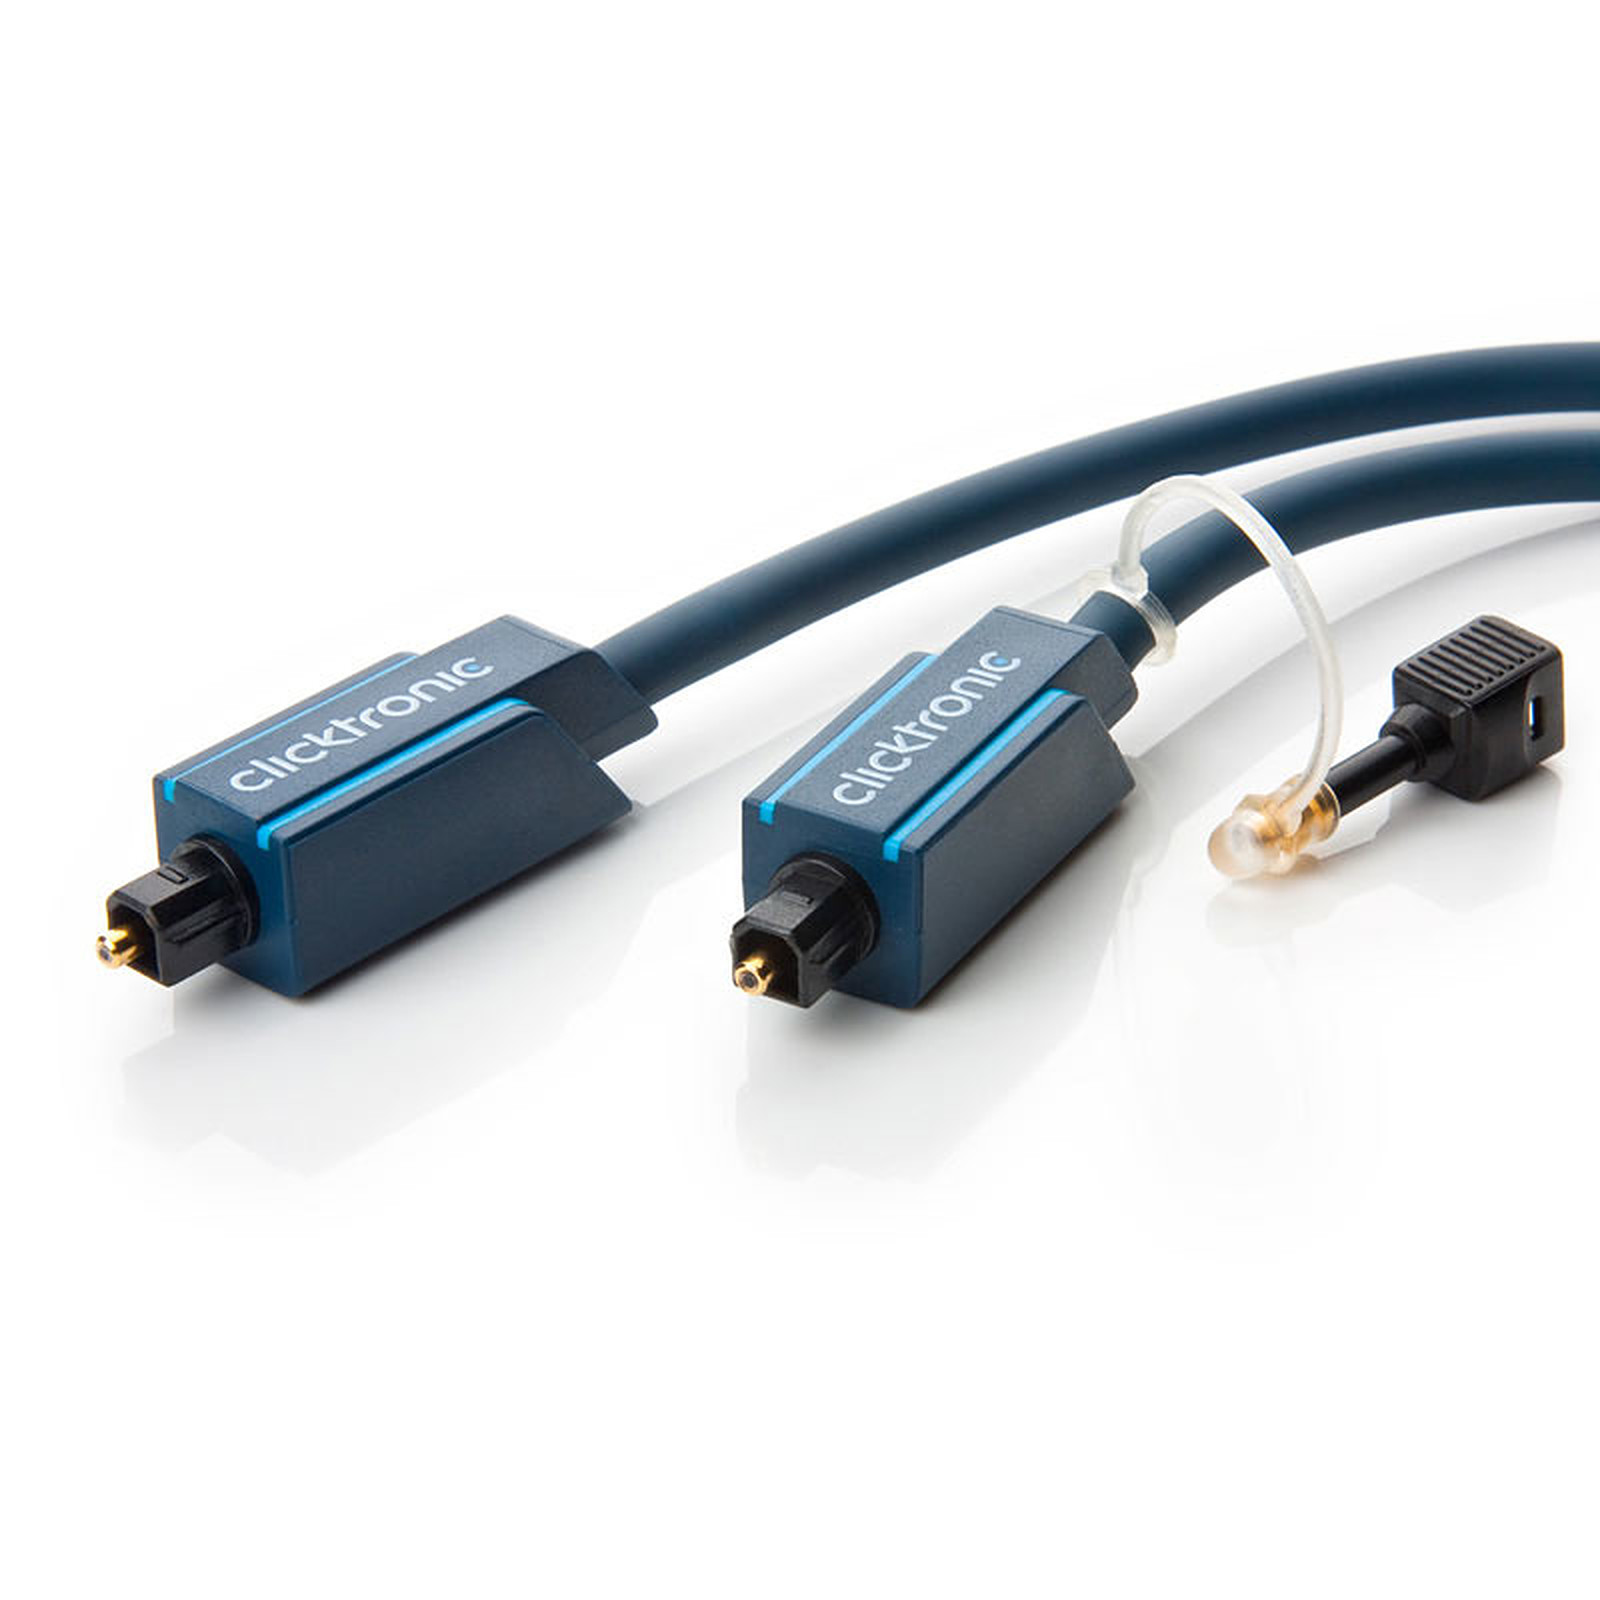 Clicktronic cable Toslink (10 mètres) - Cable audio numerique Clicktronic